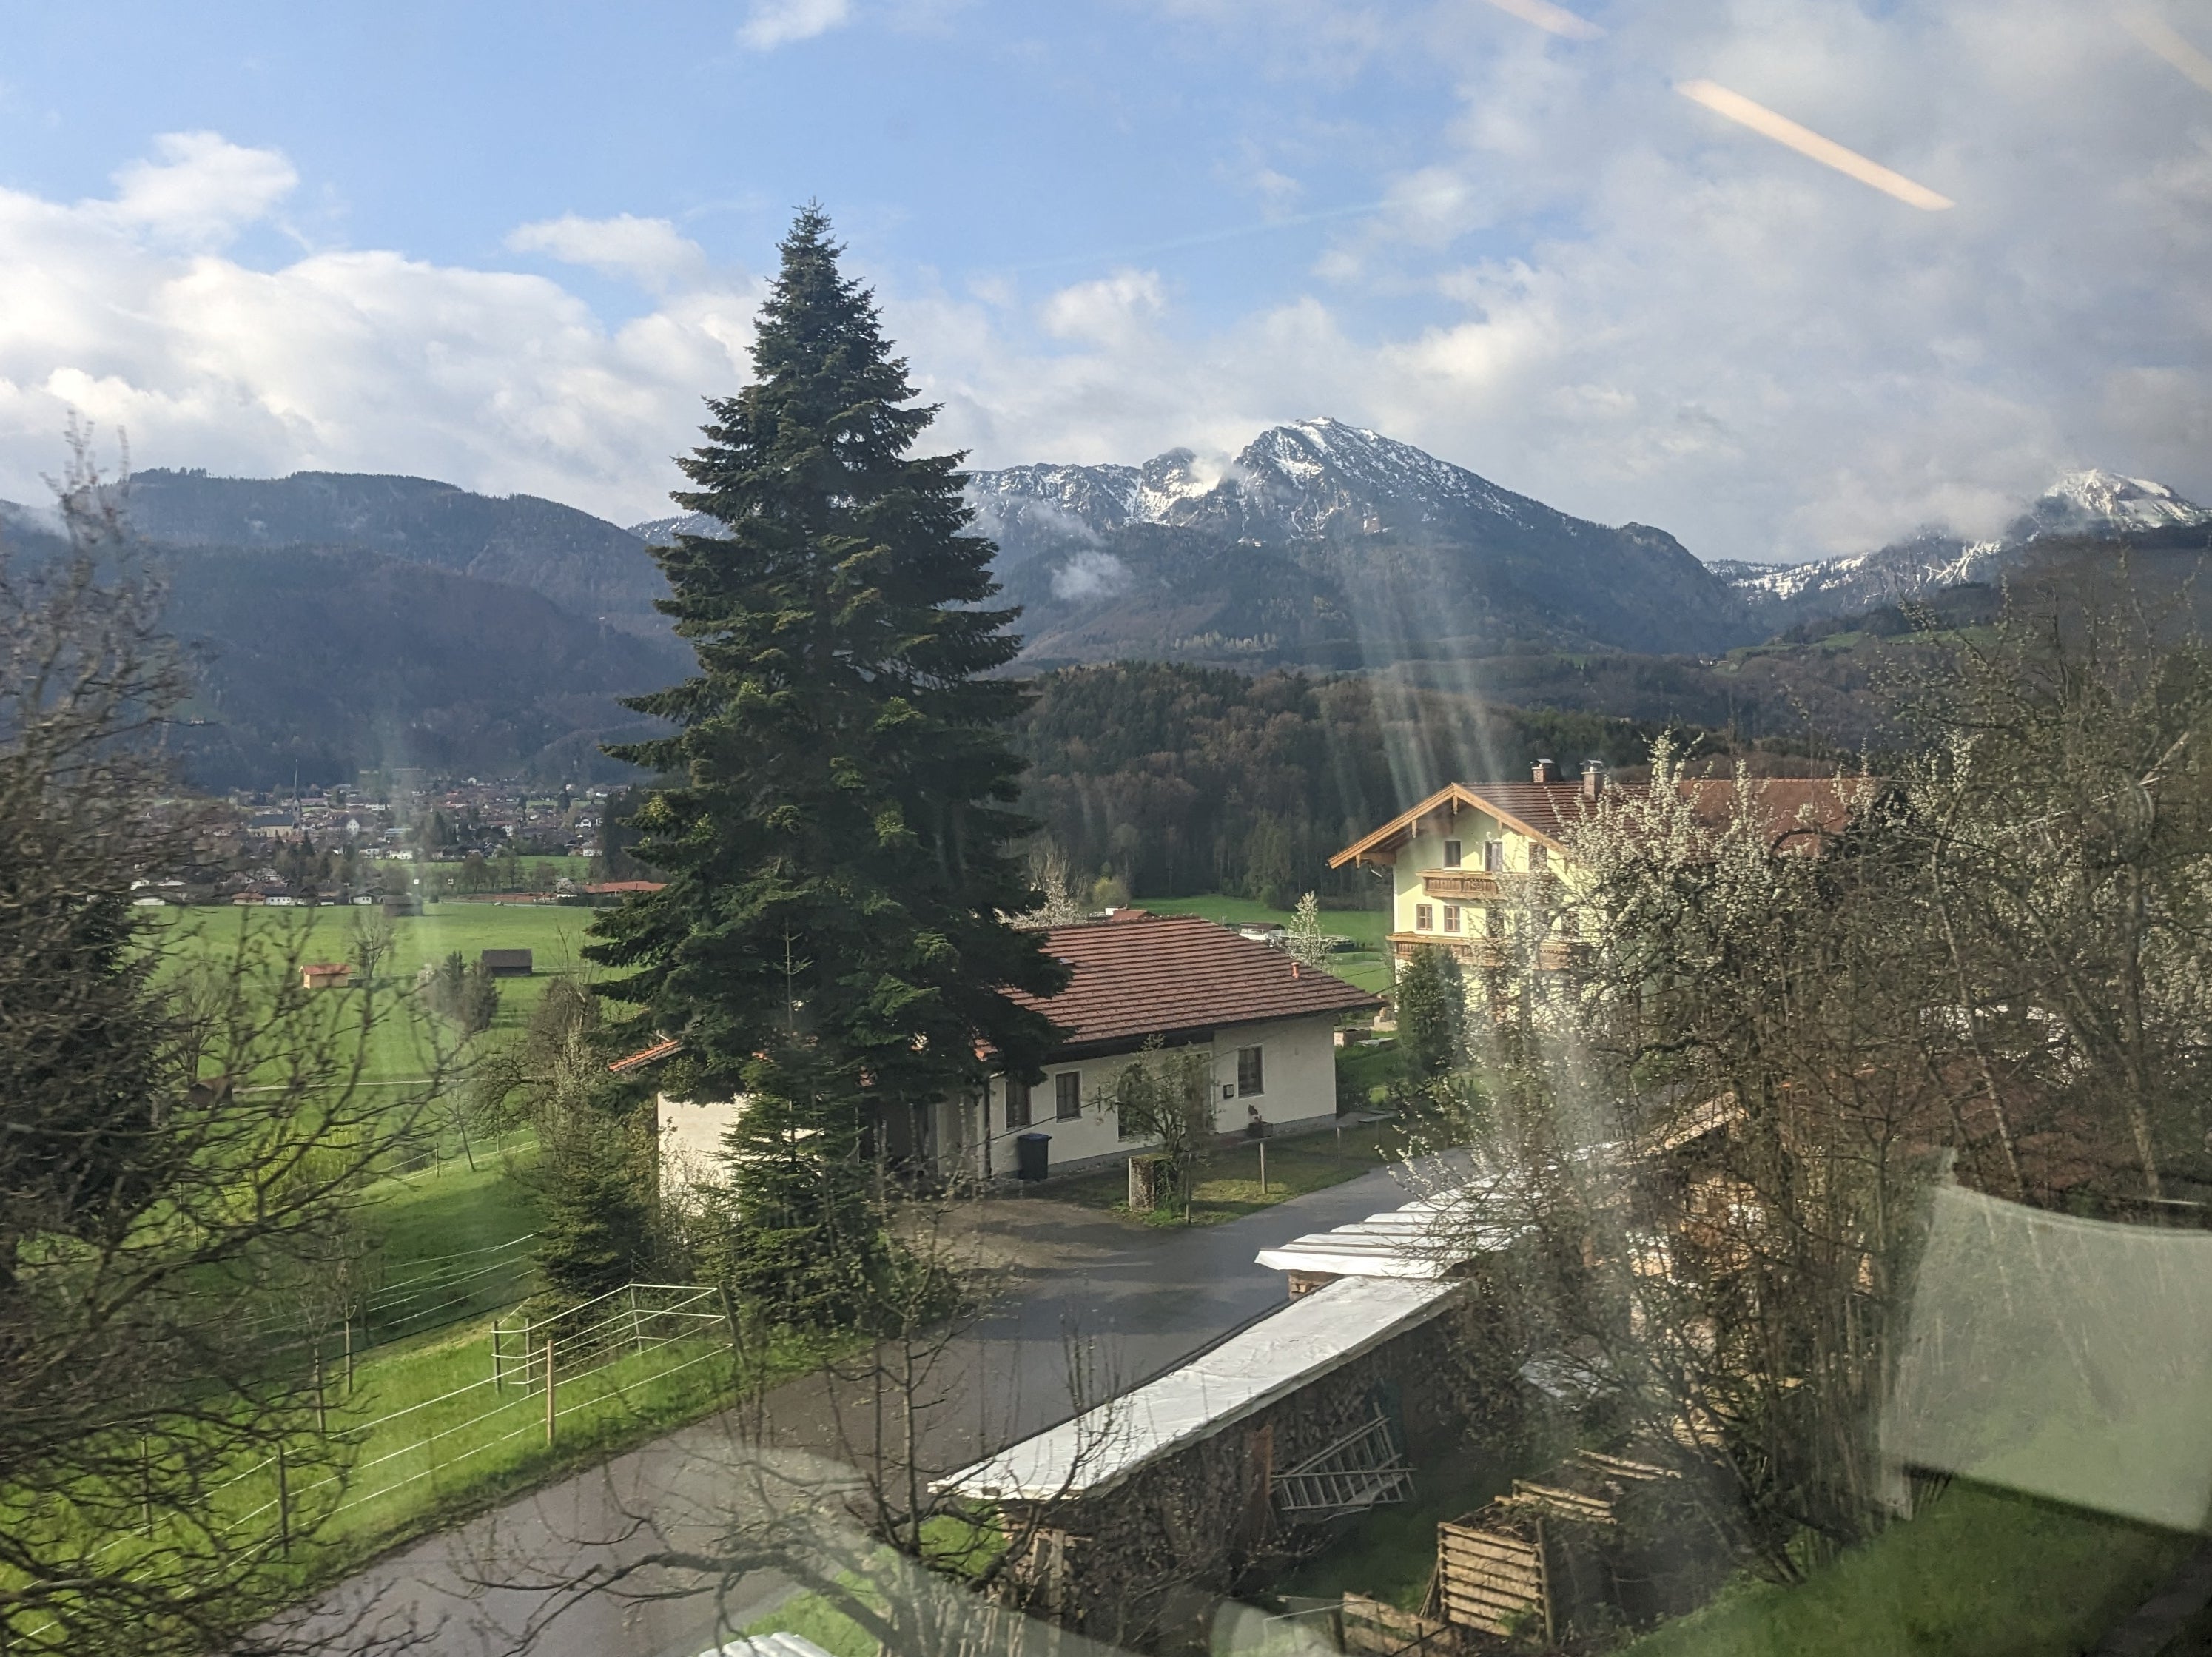 La vista del paisaje austríaco desde el tren